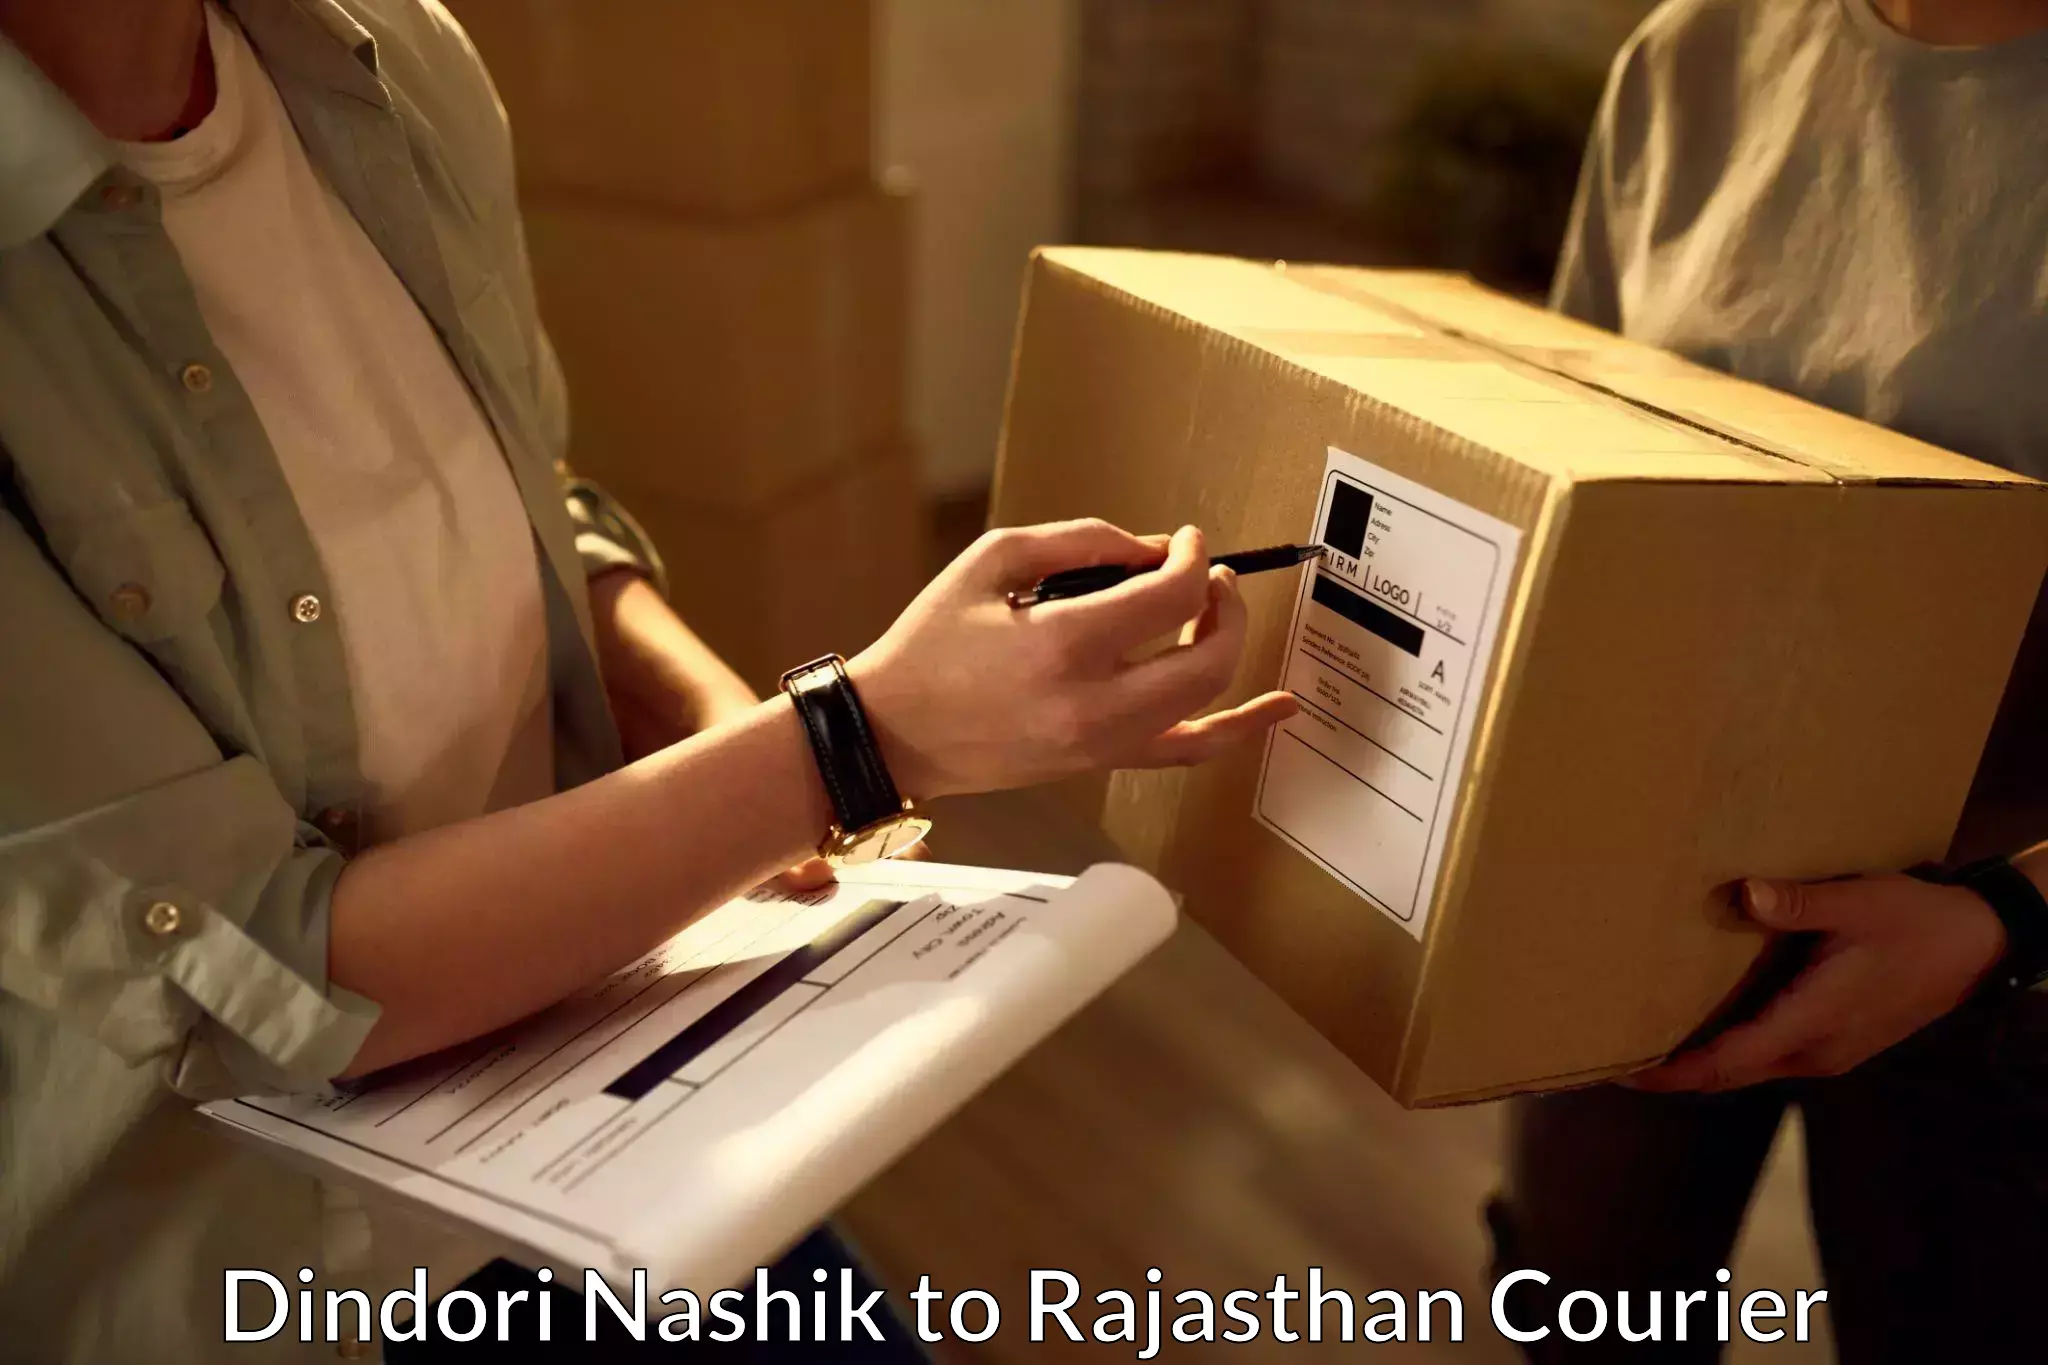 Global shipping networks Dindori Nashik to Pratapgarh Rajasthan